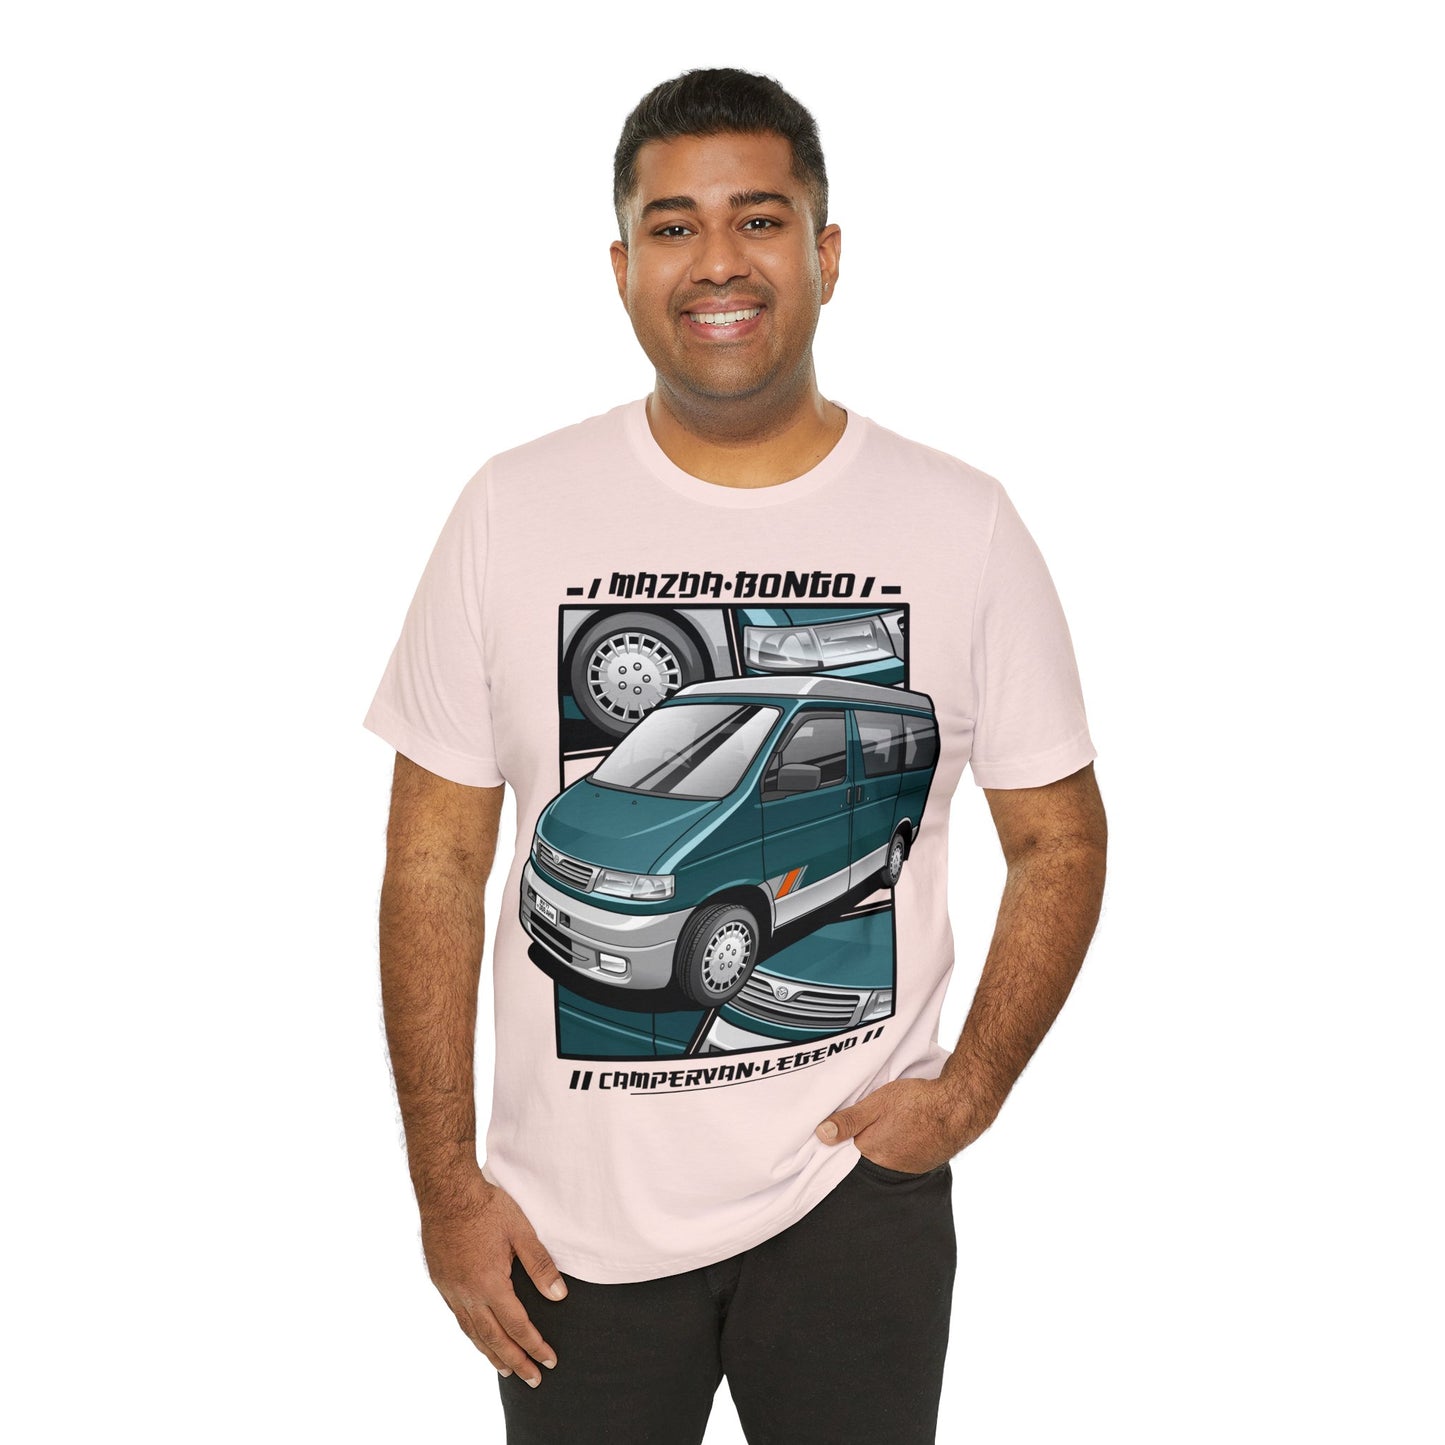 Mazda Bongo campervan legend Unisex Jersey Short Sleeve Tee